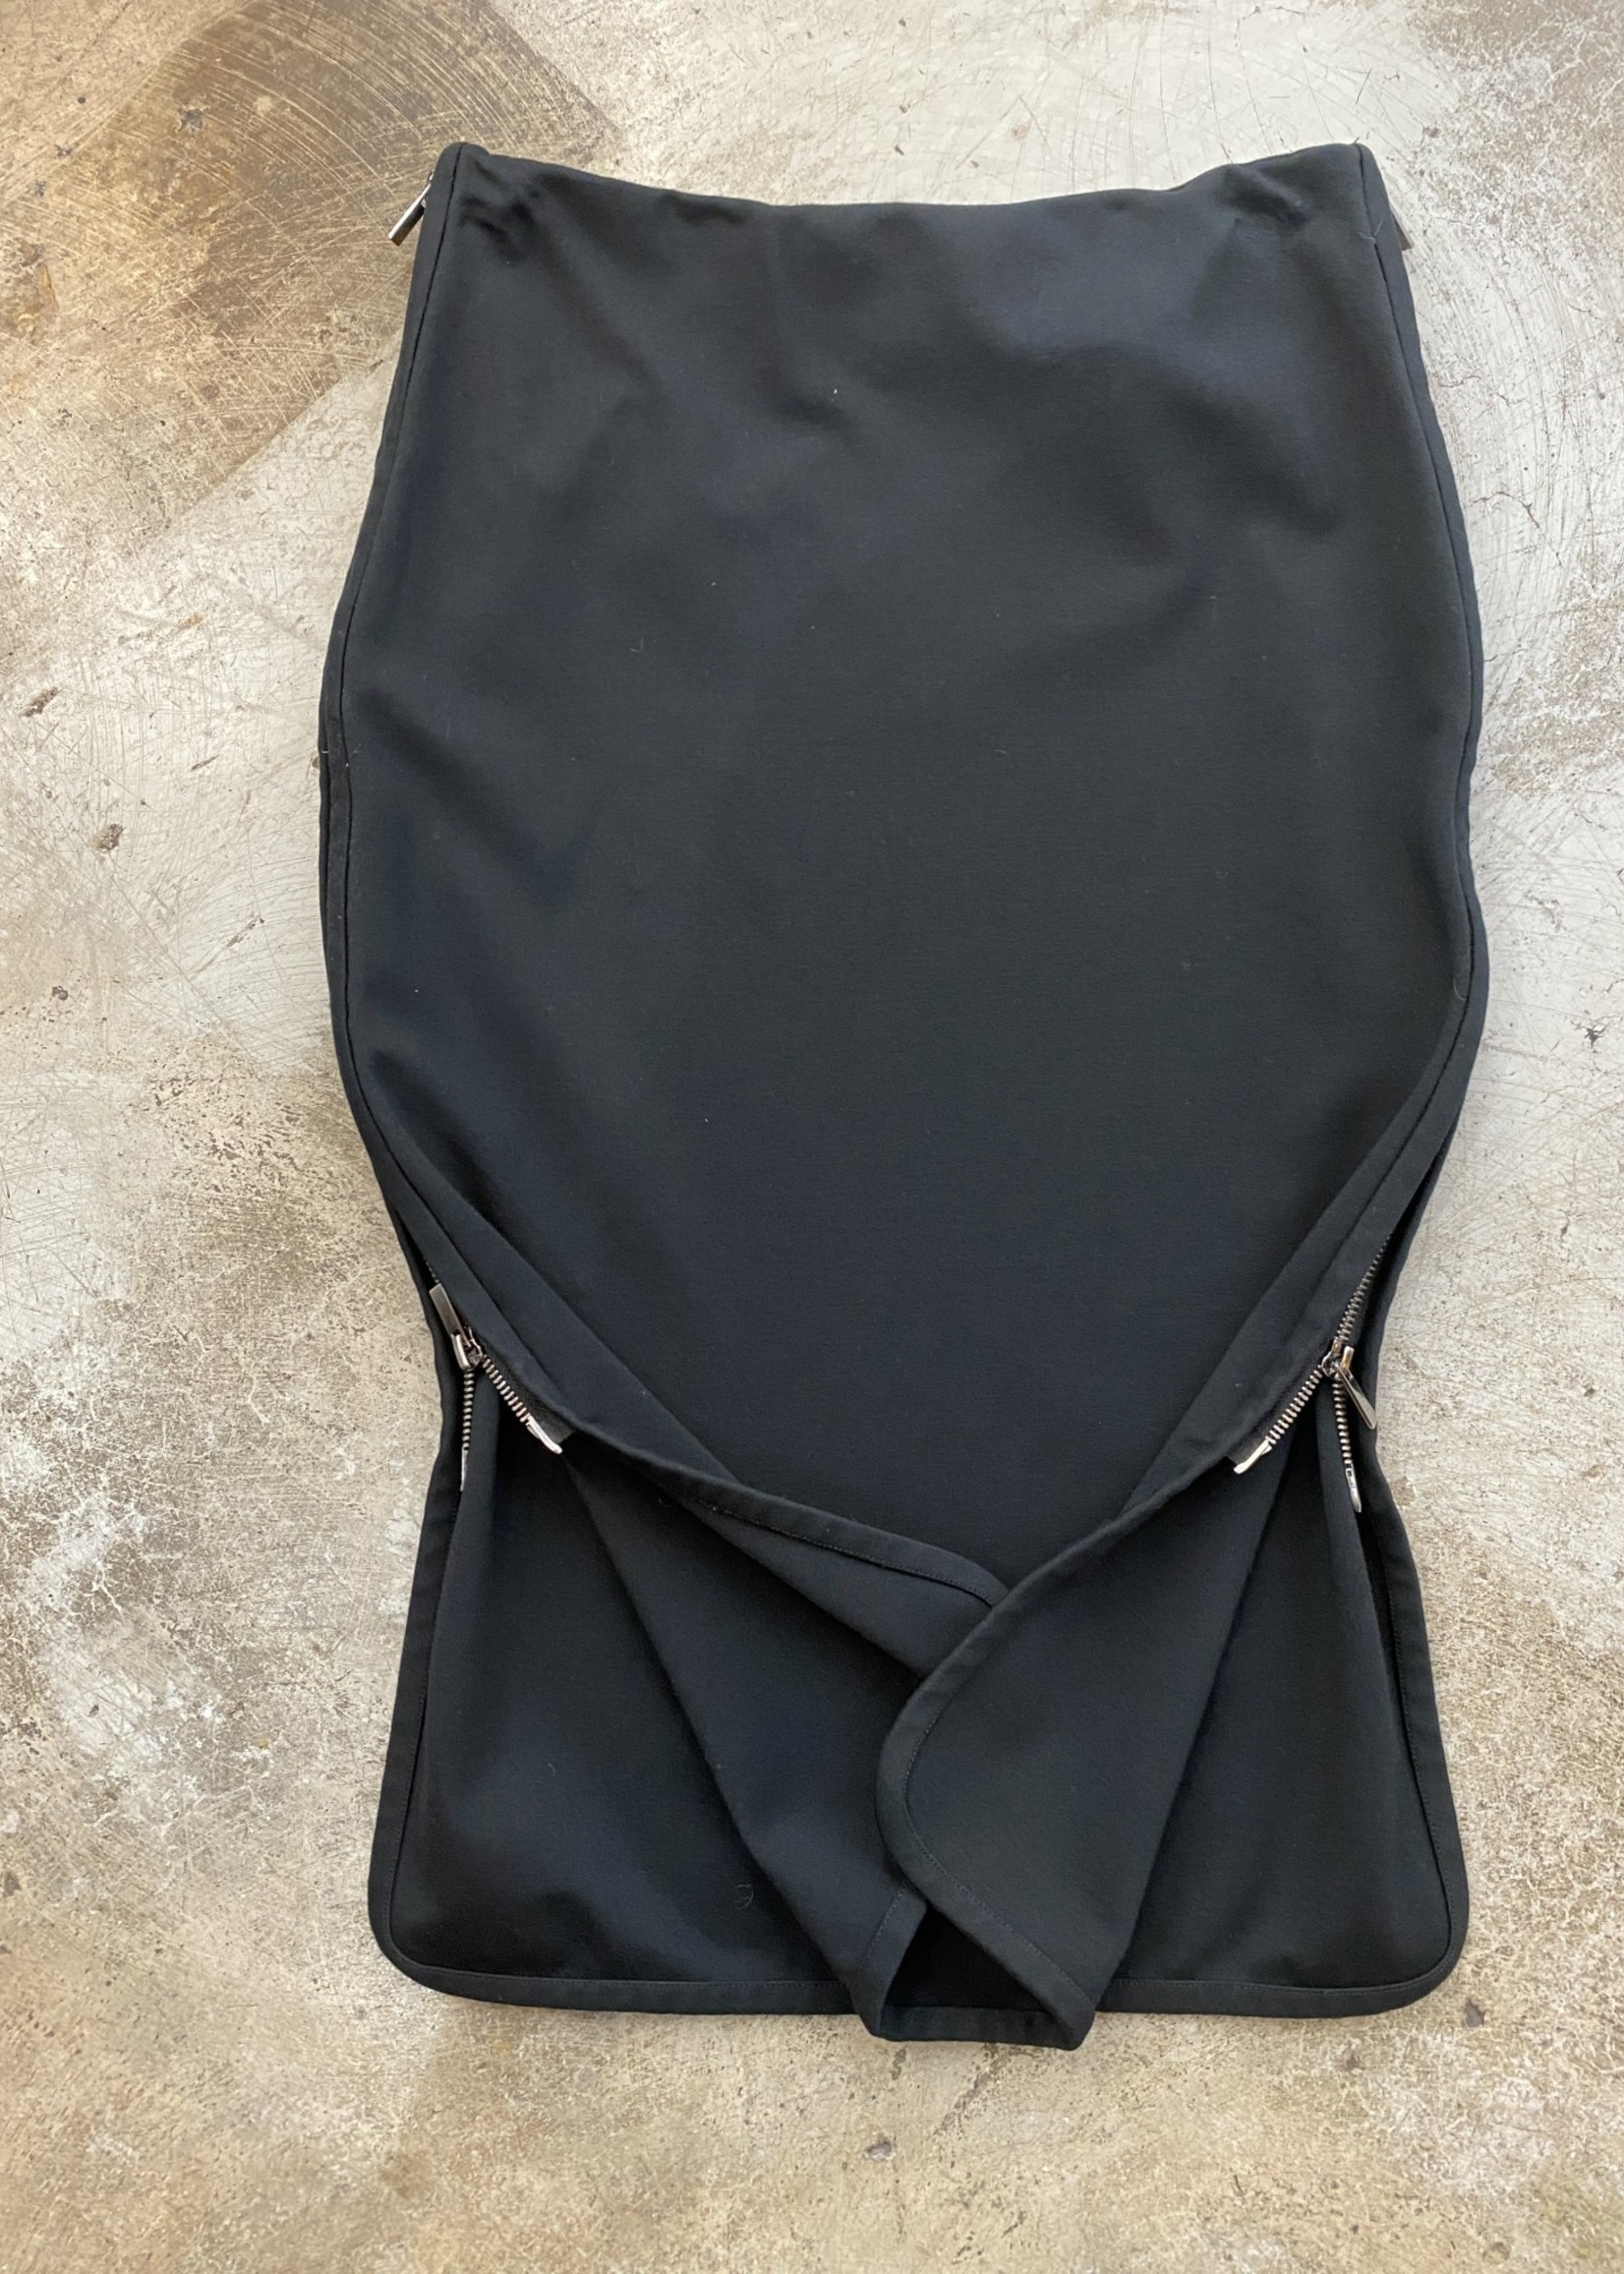 Diane Von Furstenberg Black Zipper Skirt 4/S